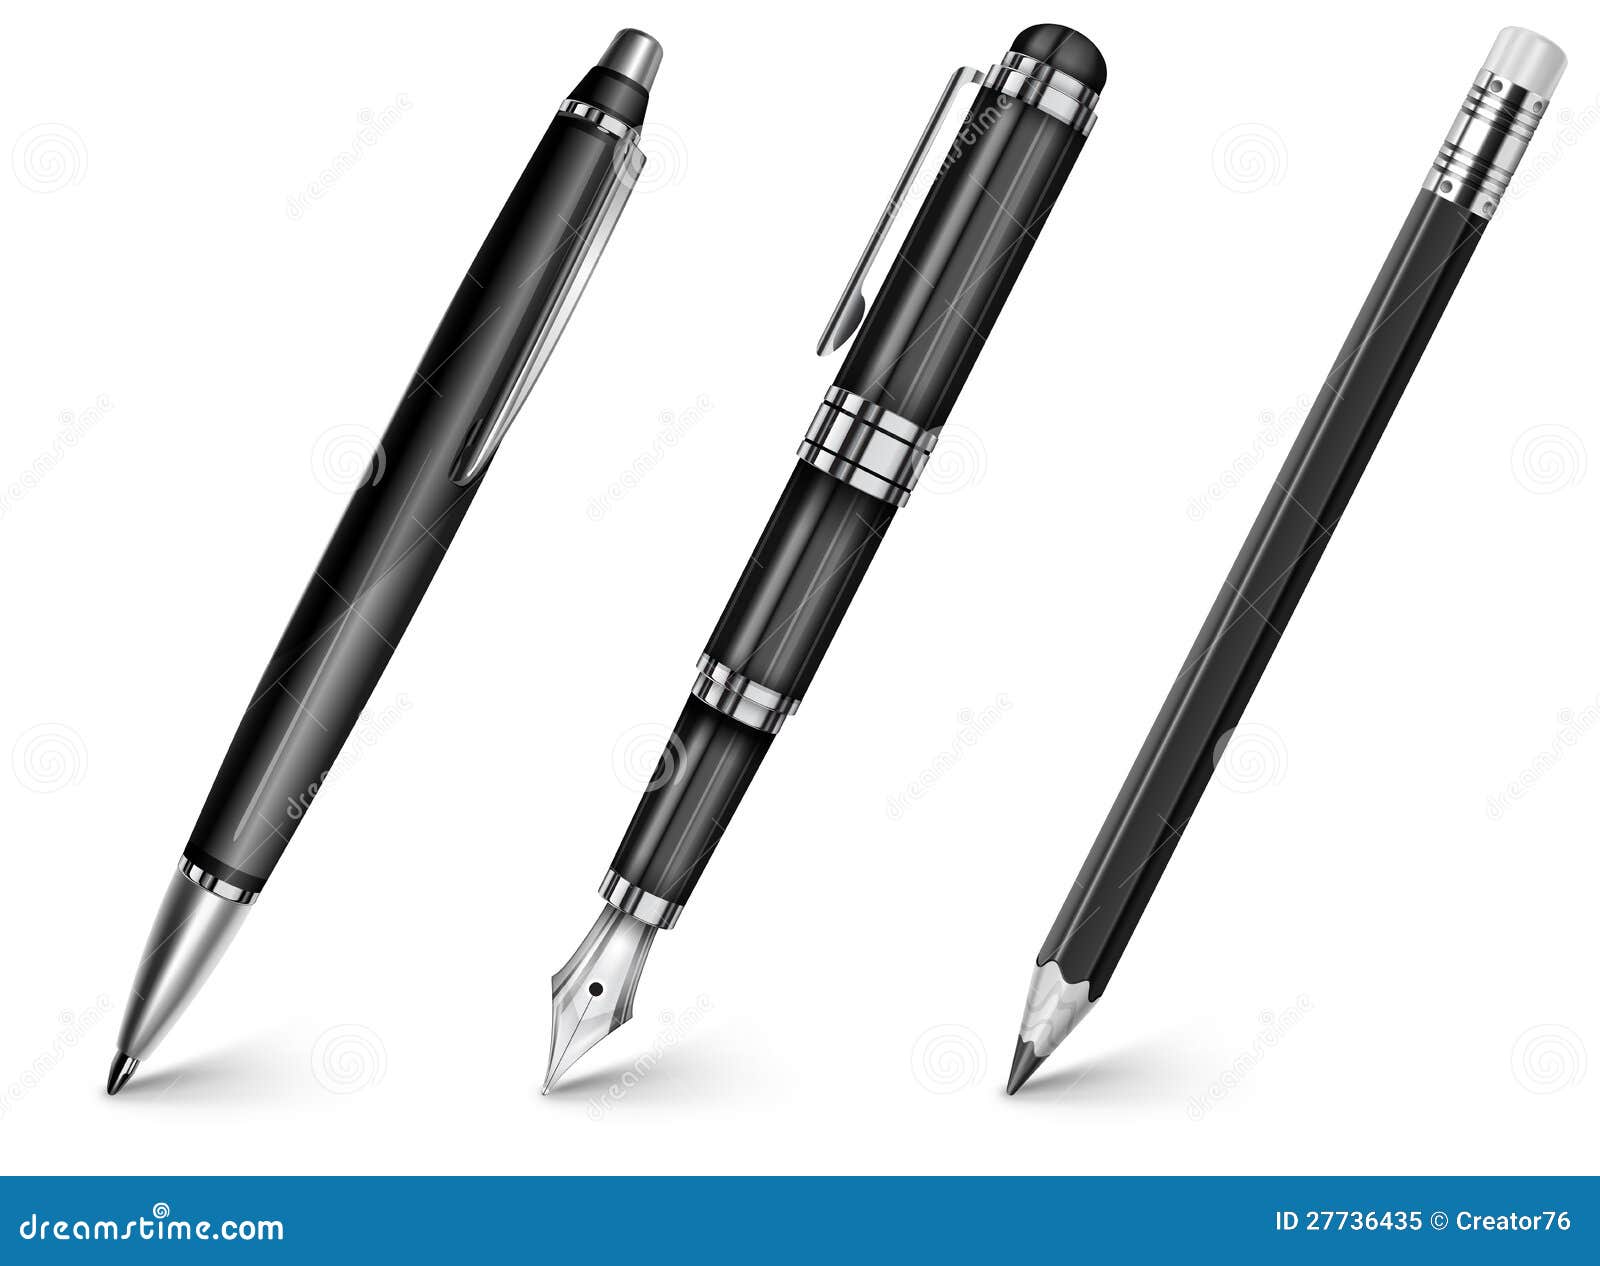 pen, pencil, fountain pen